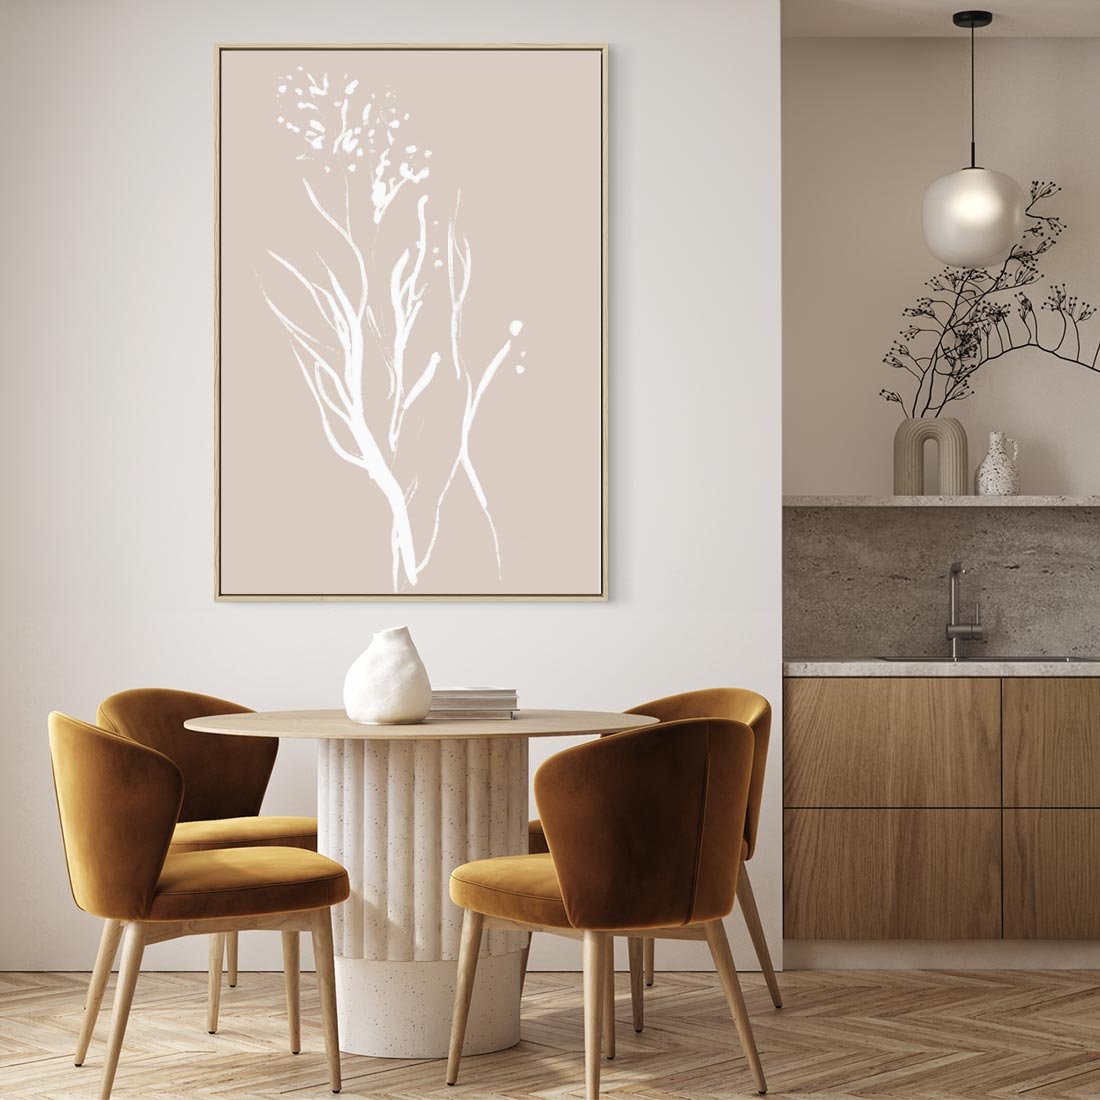 Obraz w ramie 50x70 - Impresje Pastelowych Nastrojów - minimalistyczny delikatny obraz, beżowe odcienie - rama drewno